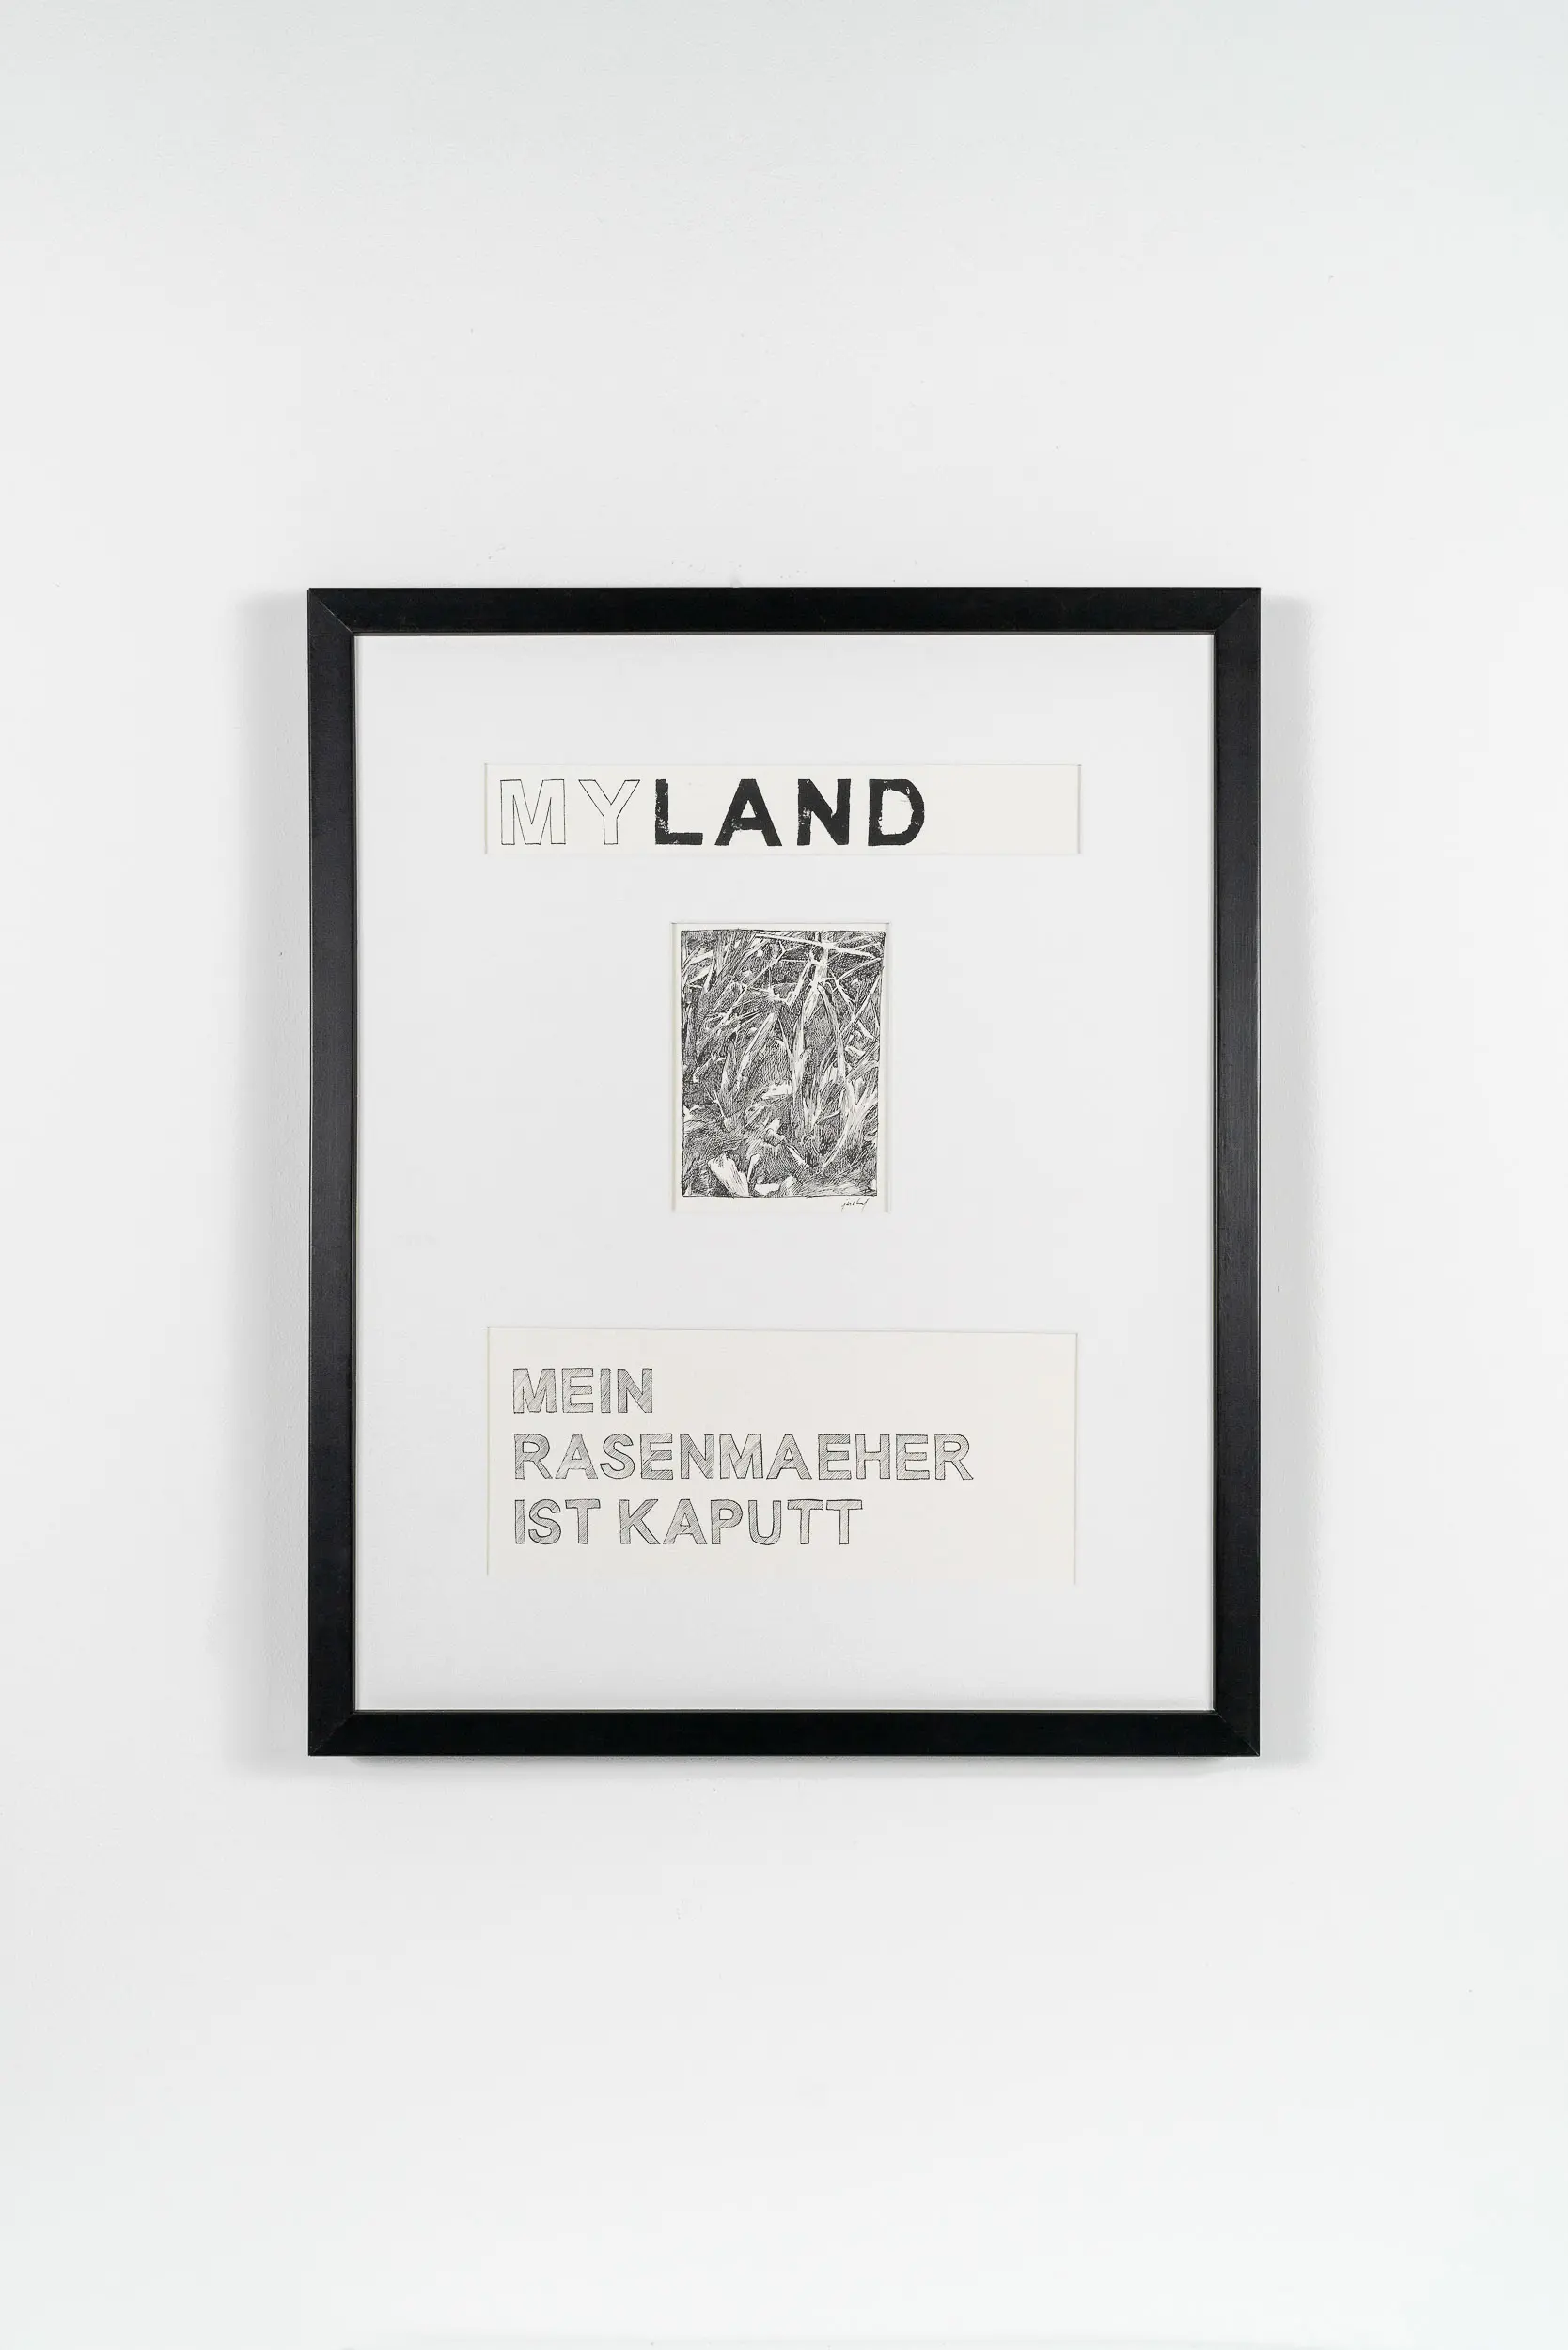 FL03 Myland 40 × 50 cm Papier / Tusche / Holzdruck 2013 